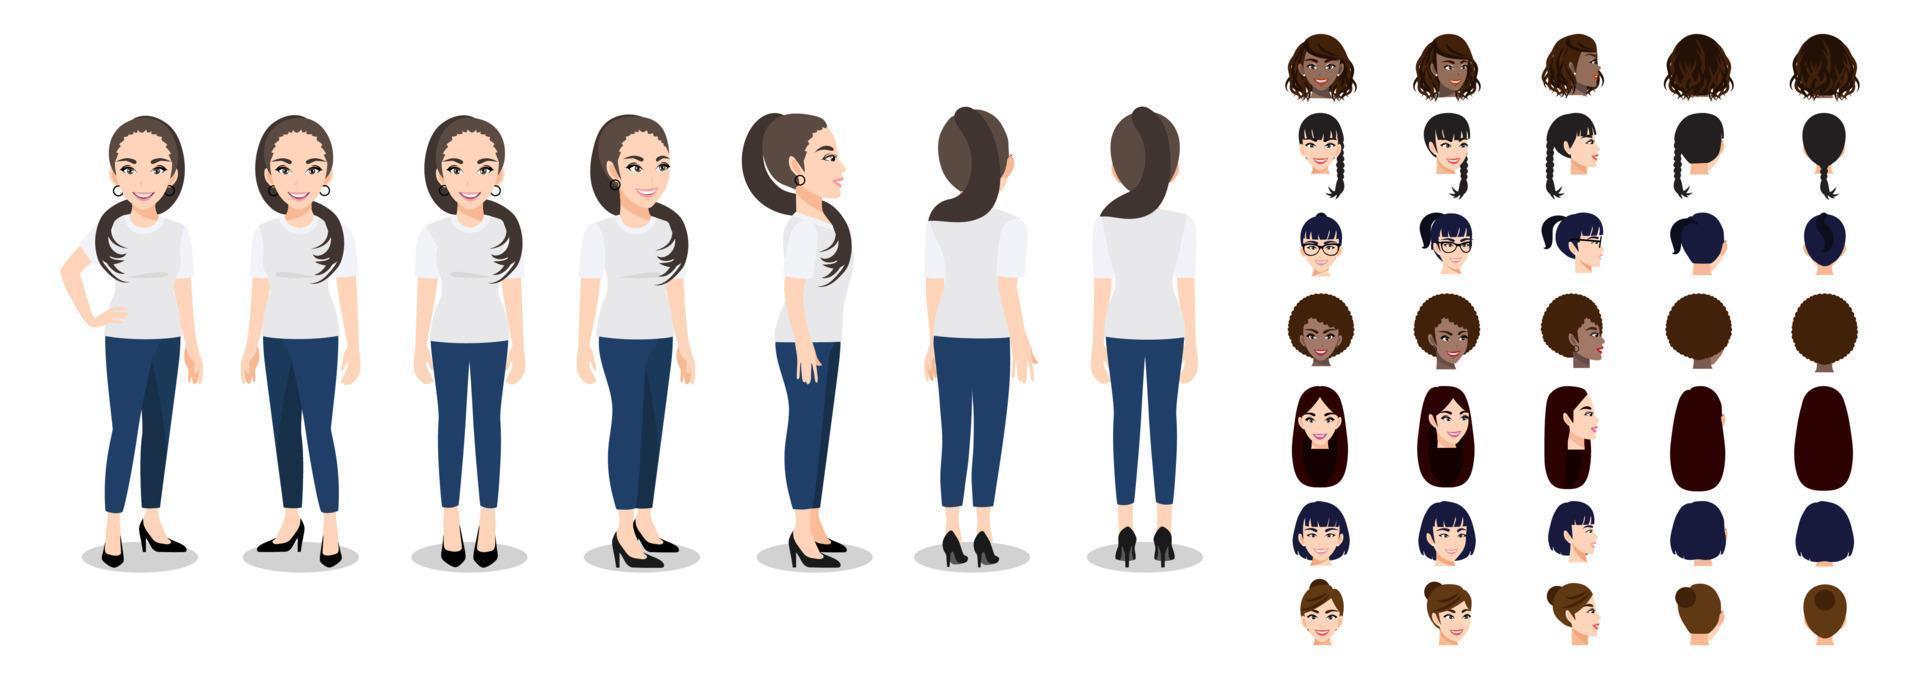 seriefigur med en kvinna i t-shirt vit casual för animering. framsida, sida, baksida, 3-4 vykaraktär. uppsättning kvinnligt huvud och platt vektorillustration. vektor